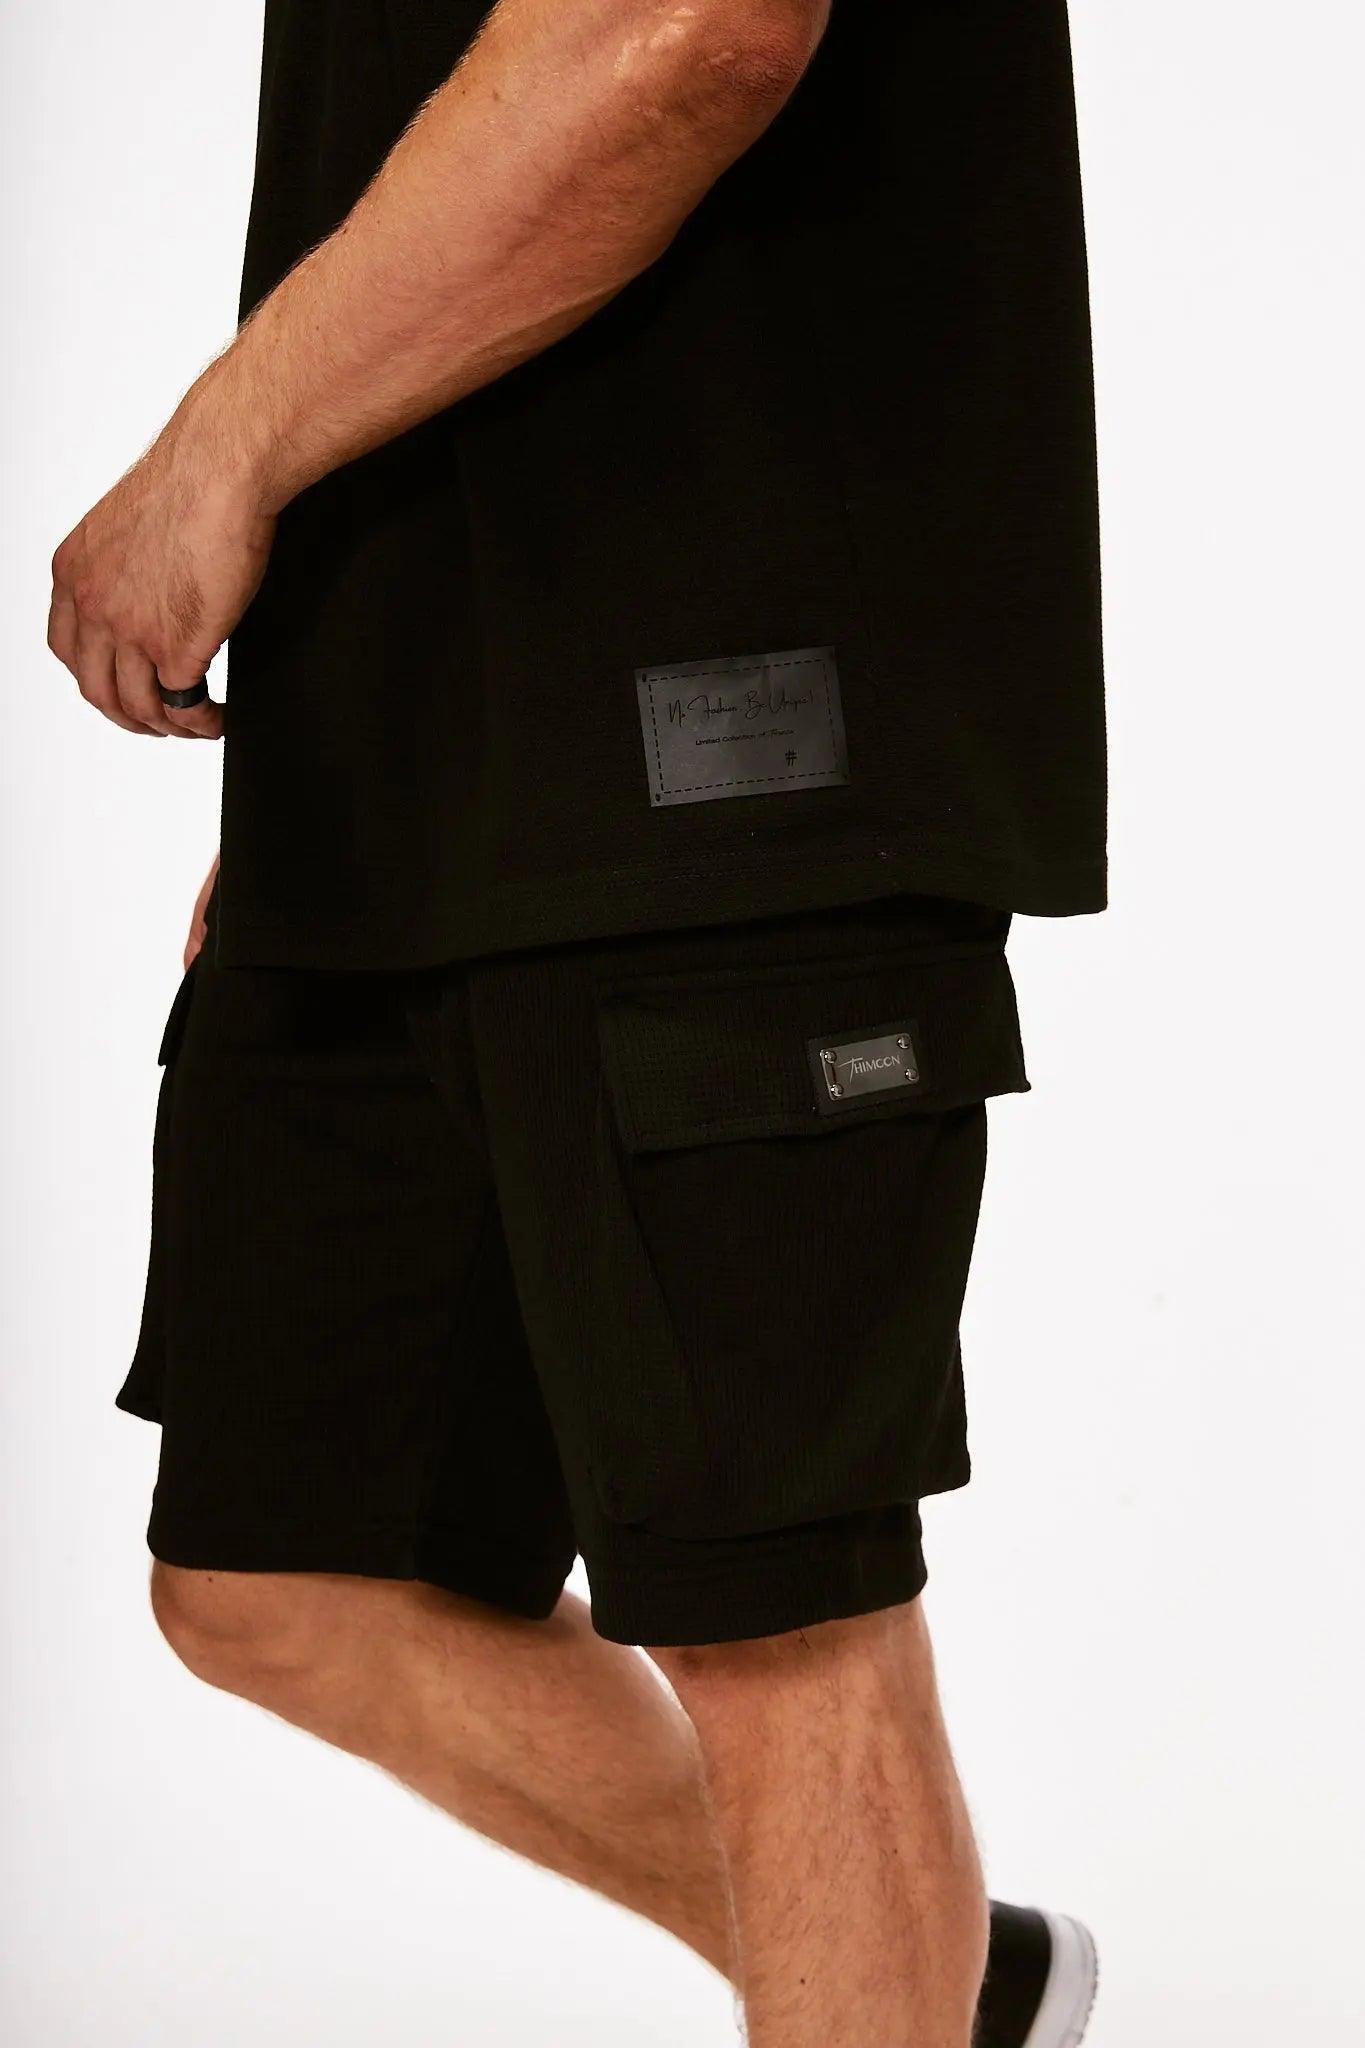 Men's Texture Taped Black T-Shirt & Black Shorts THIMOON®